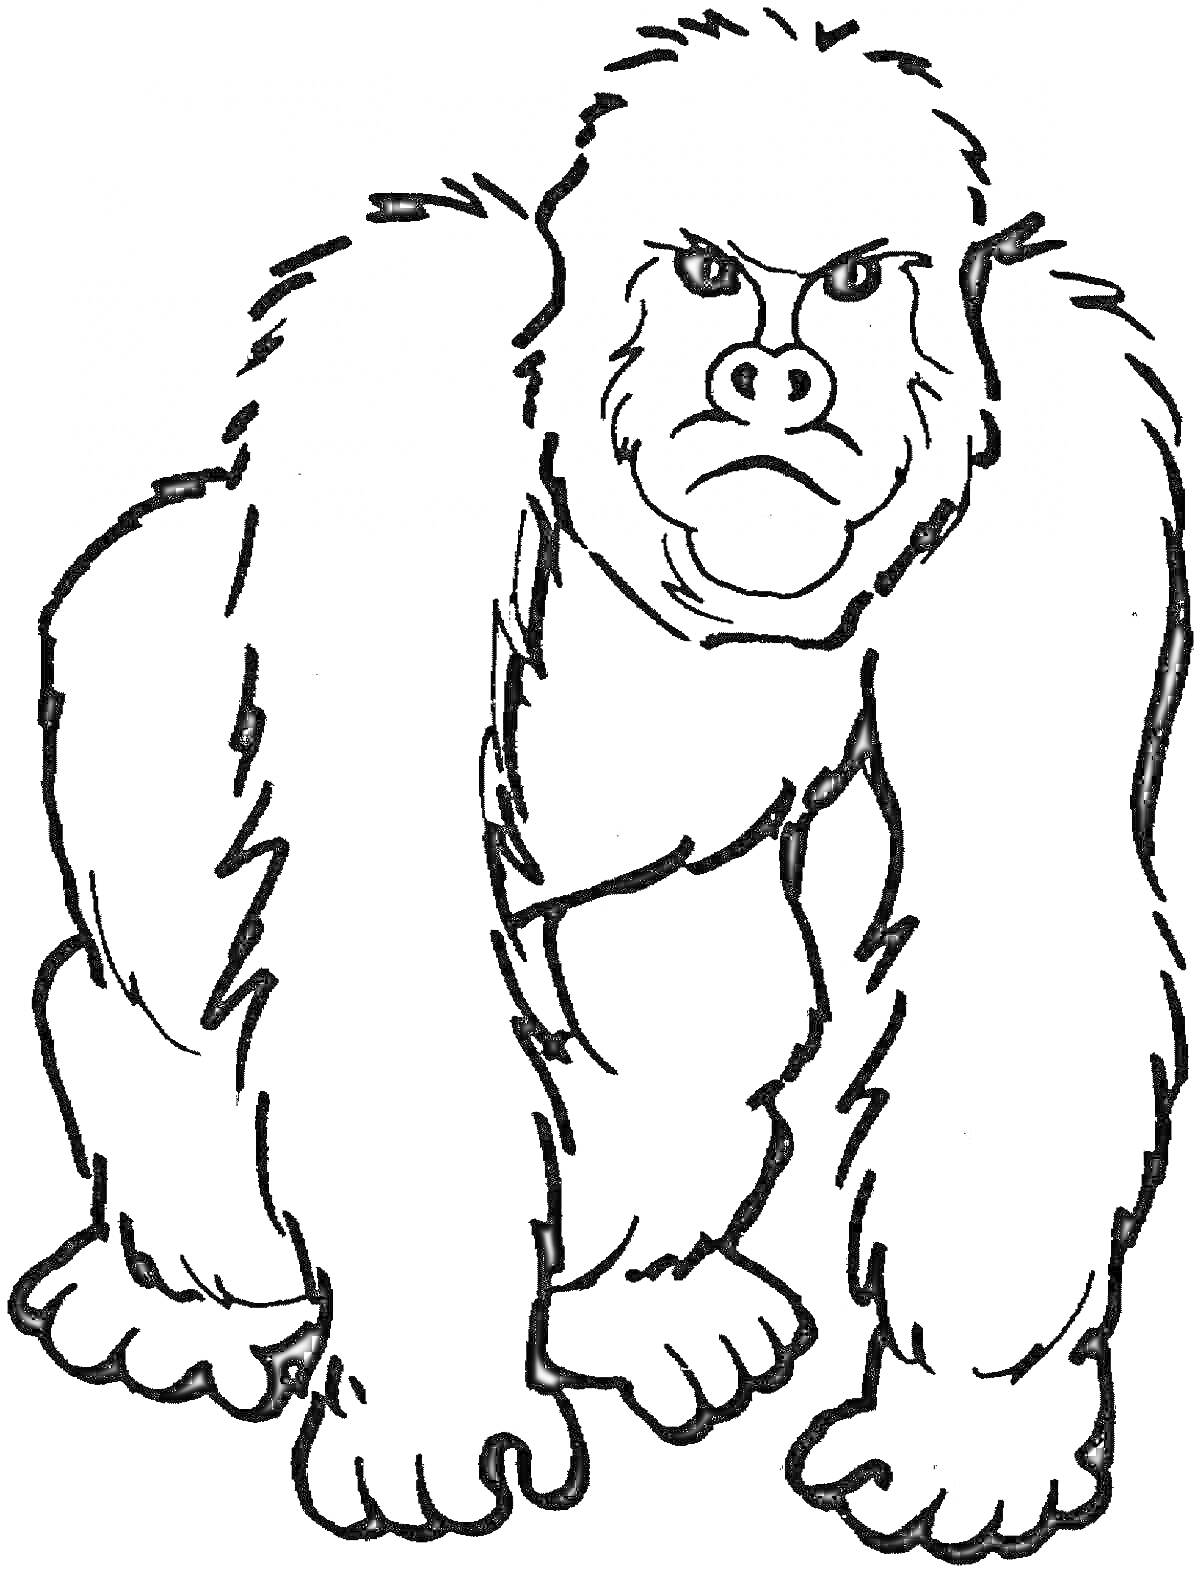 РаскраскаРаскраска с изображением гориллы в стоячей позе, с серьезным выражением лица.